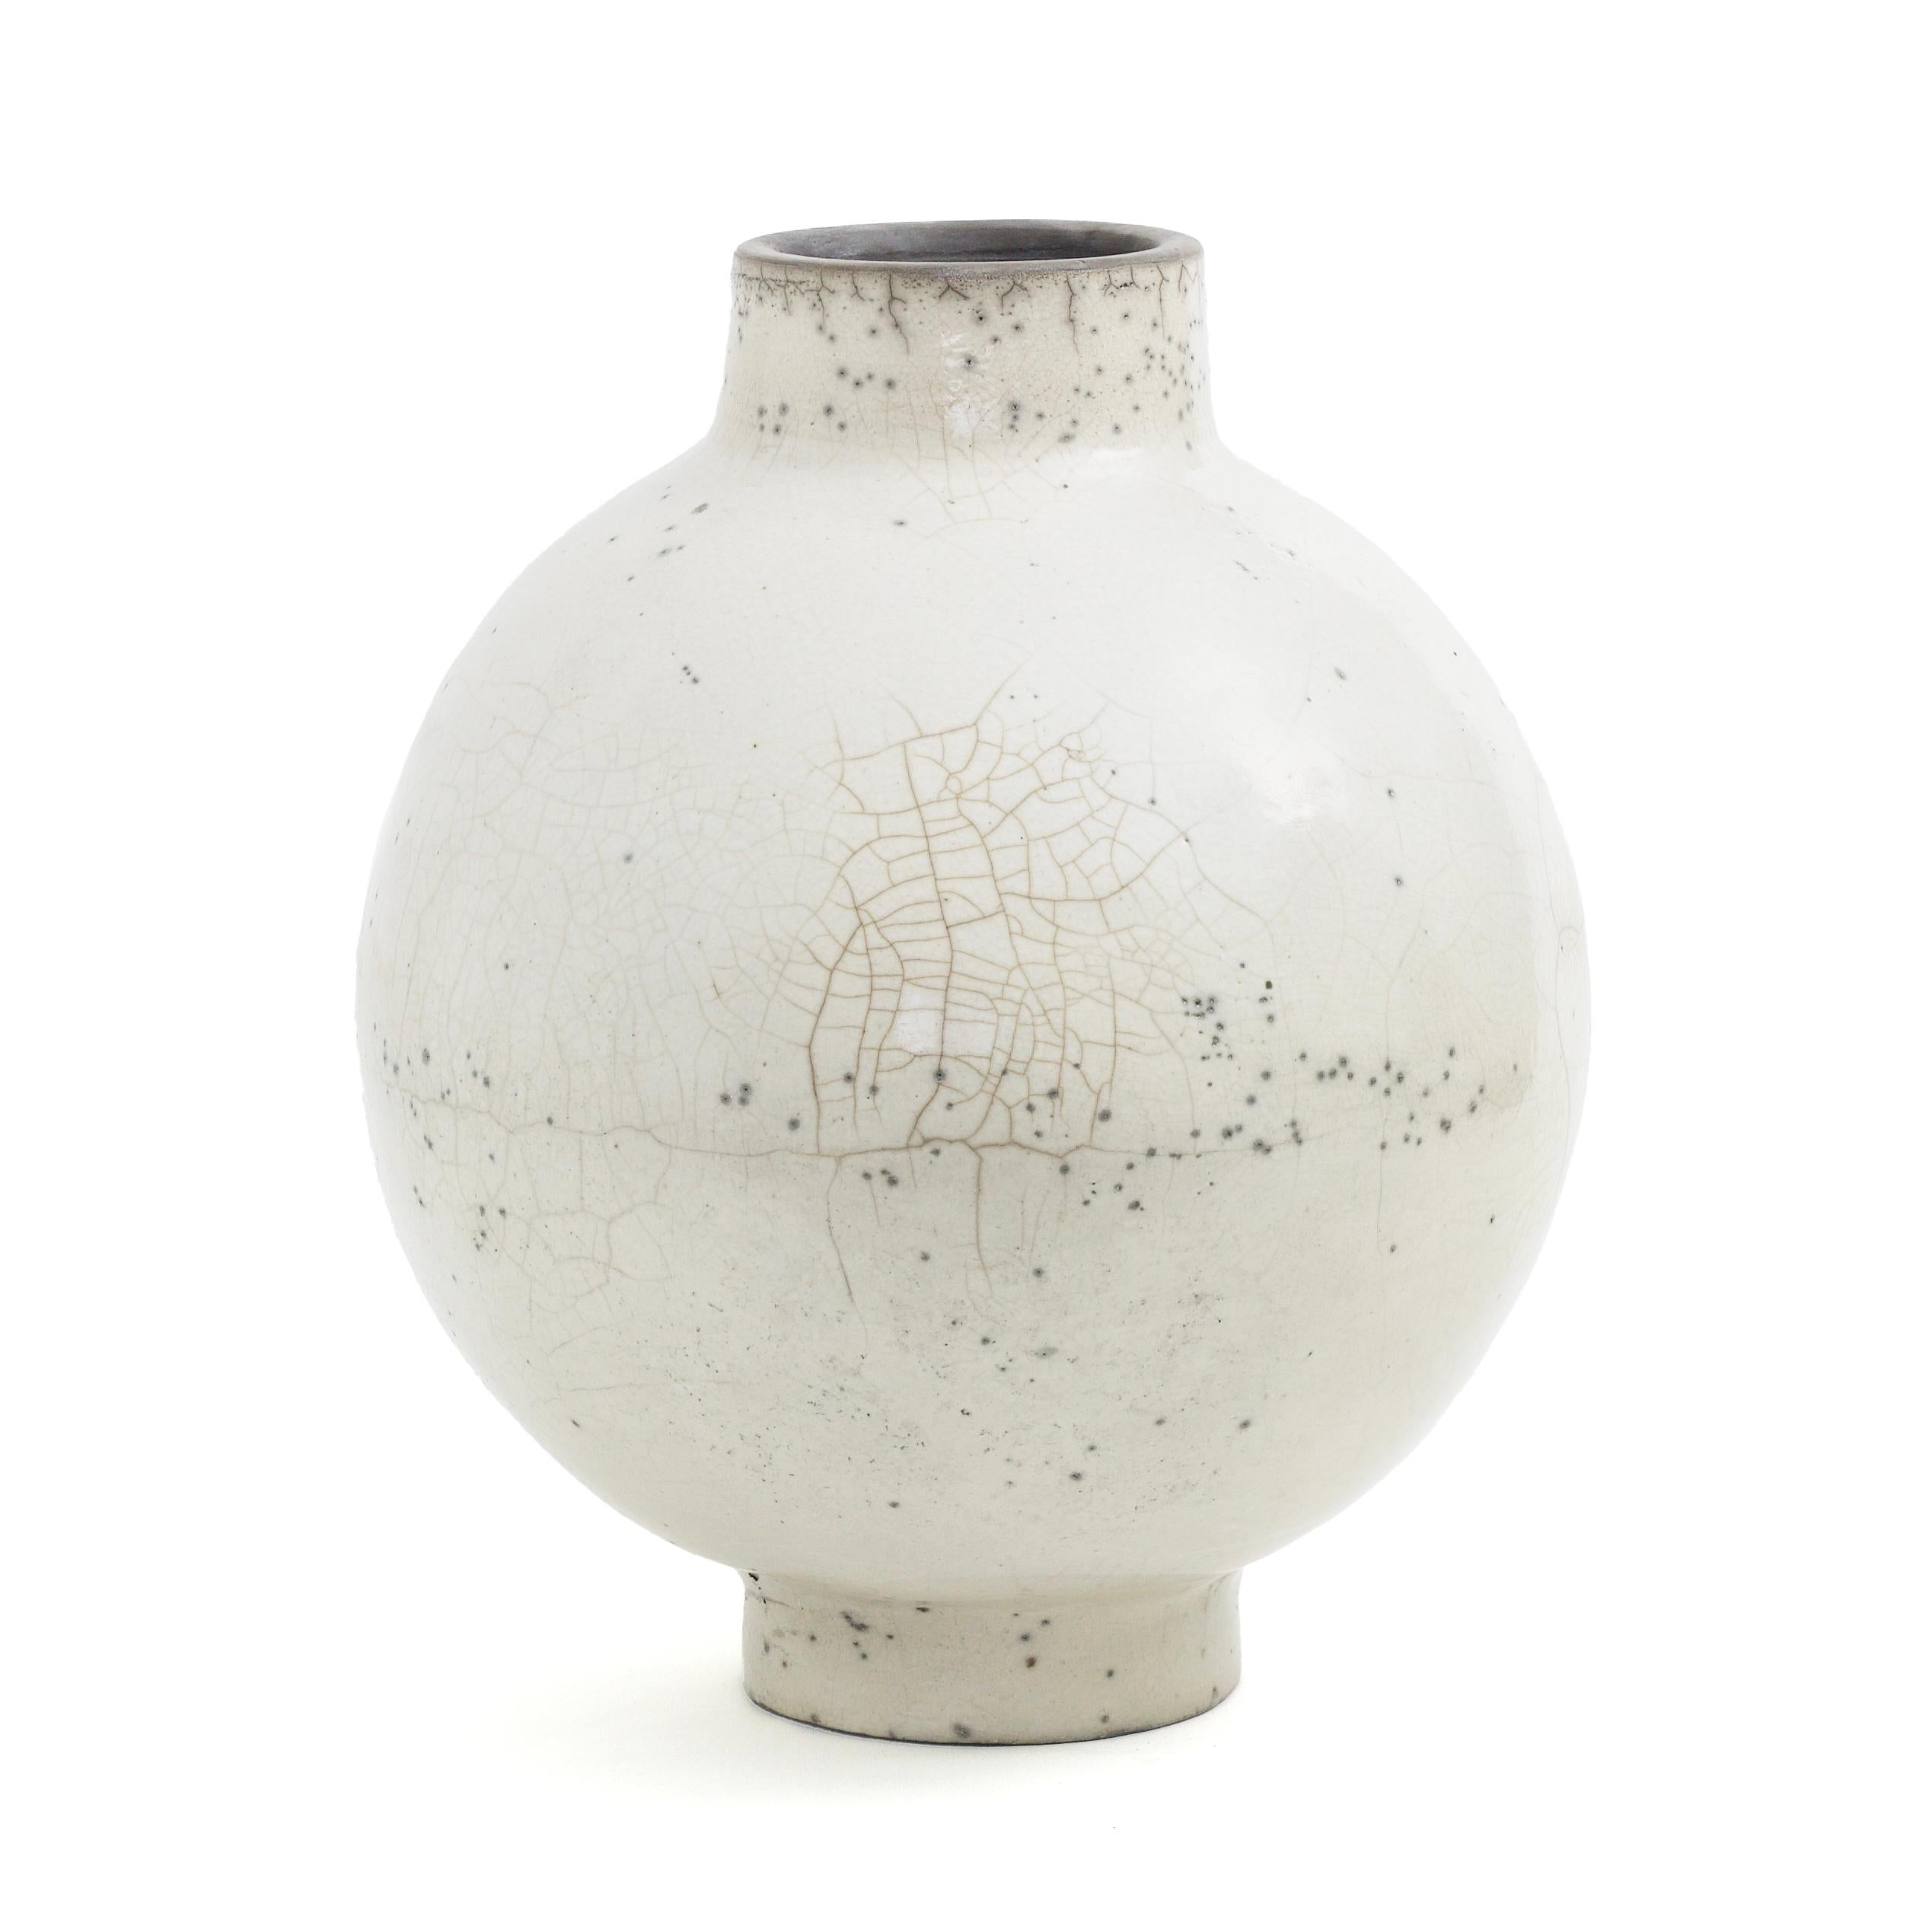 Vase Dome L

Un corps bombé, marqué par des courbes généreuses et animé par de minuscules taches sombres, définit ce vase exquis en céramique, dont les fissures caractéristiques et délicates résultent d'une application habile de l'ancienne